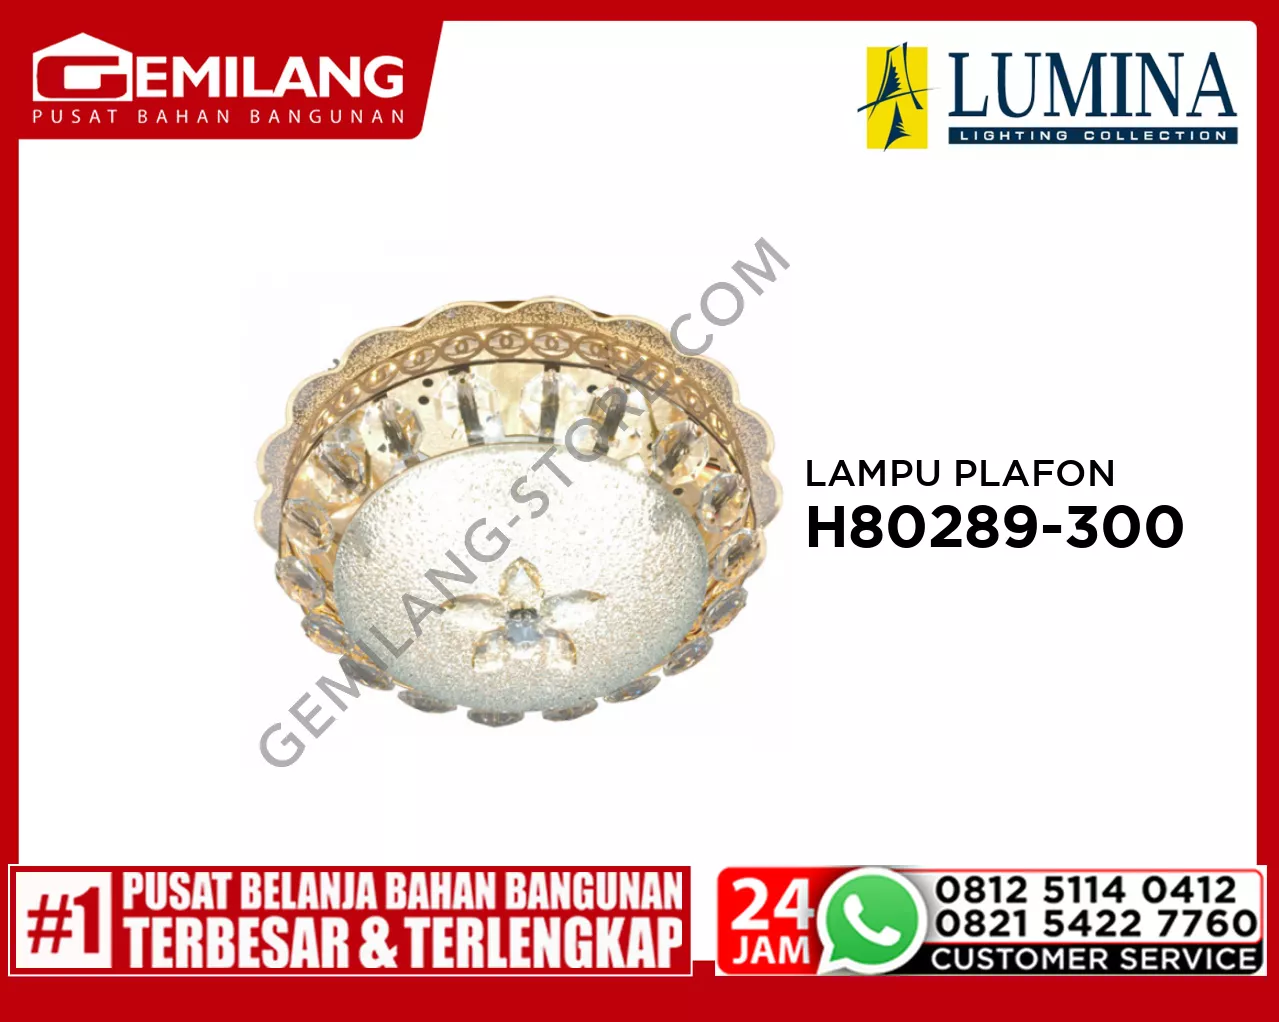 LAMPU PLAFON H 80289-300